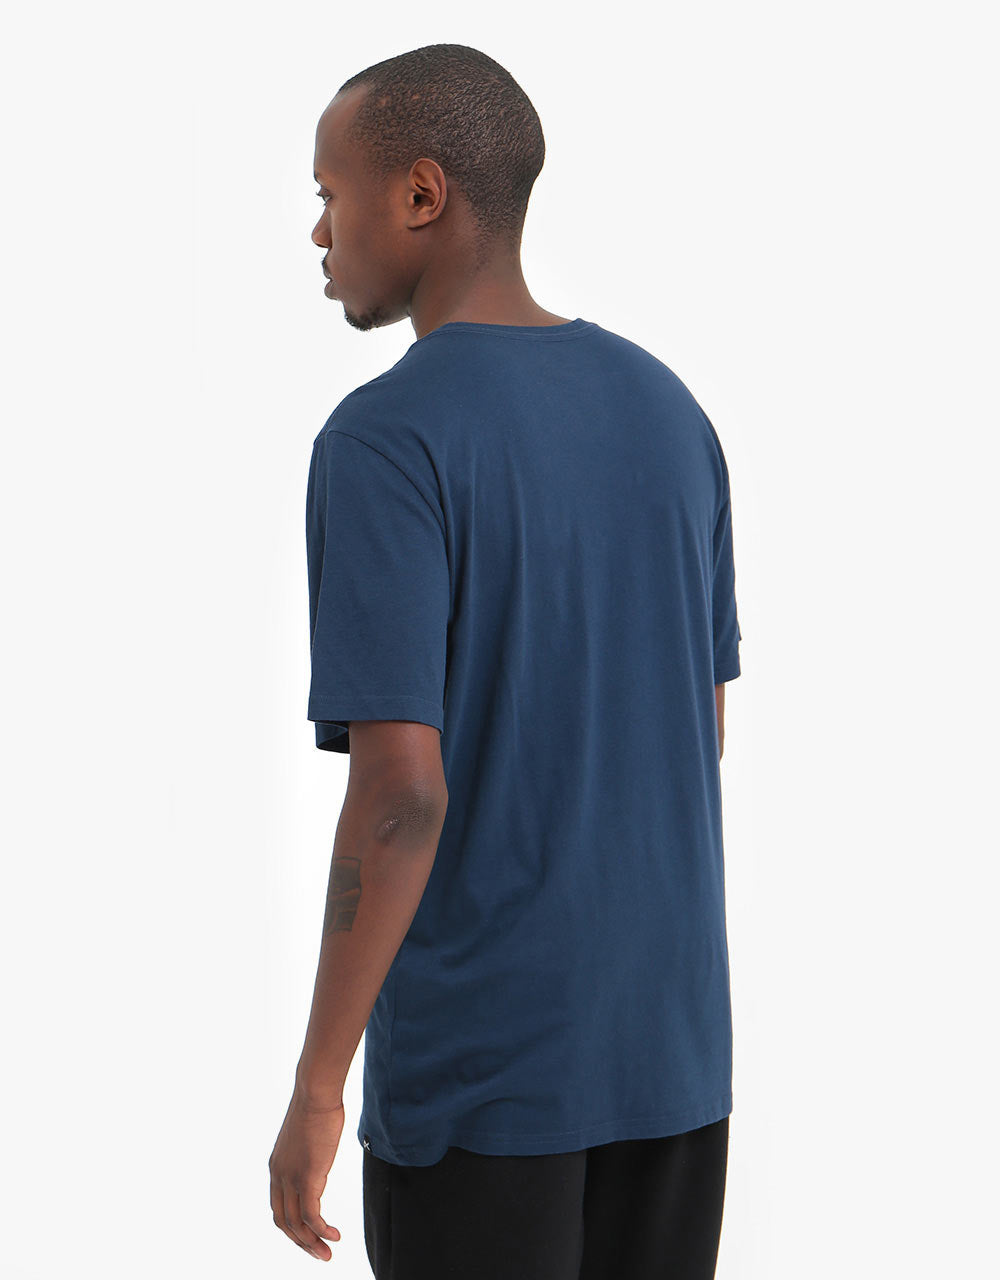 Anon Logo T-Shirt - Dress Blue